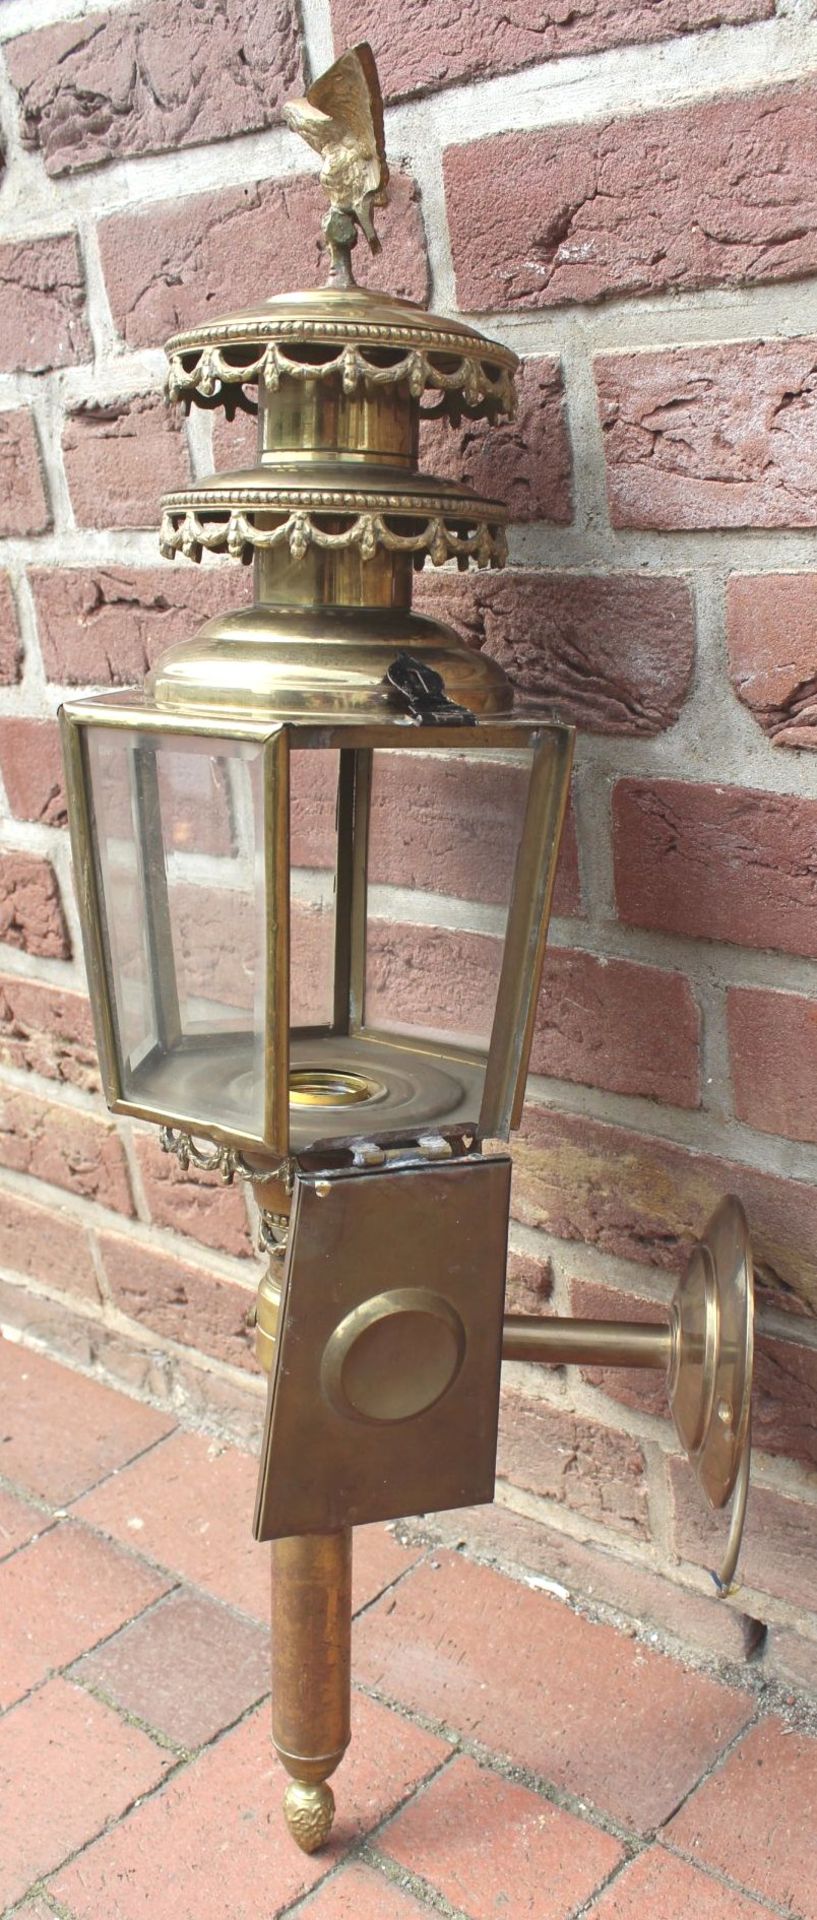 grosse, massive Kutschenlampe, Messing/Bronze, H-75 cm, B-28 cm, elektrisch, guter Zustand - Bild 8 aus 9